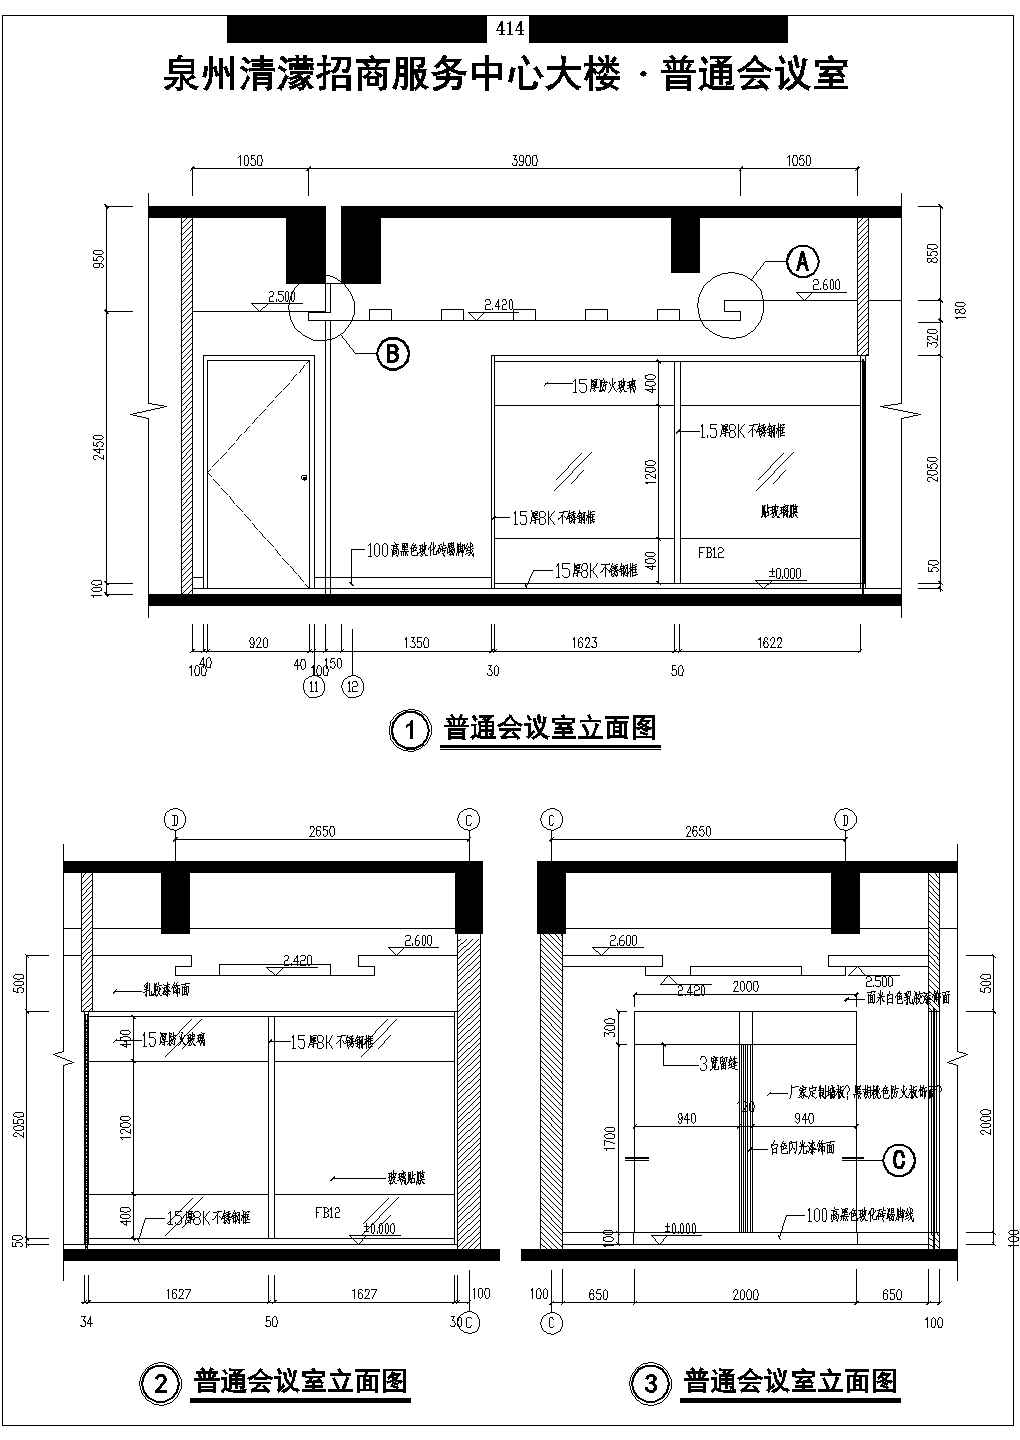 泉州清濛招商服务中心大楼全套办公装修CAD图纸